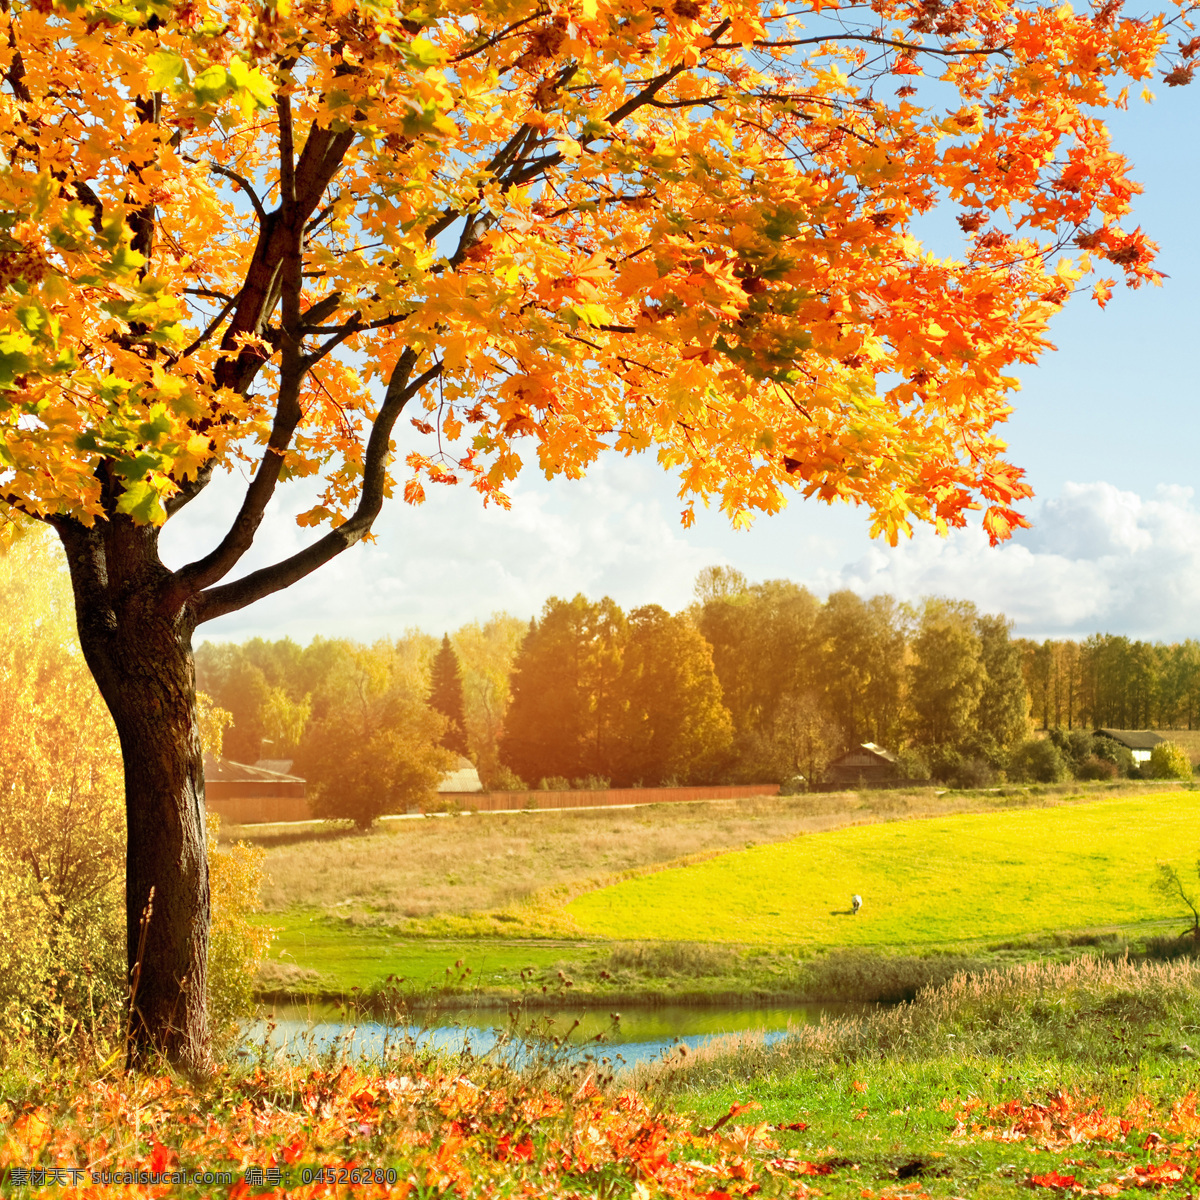 秋天树林 秋季 秋天 落叶 树叶 枫叶 红叶植物 枫树林 森林 小路 道路 自然 美景风景 大自然 秋天美景 树林 秋季唯美 壁纸 风景 自然风景 美景 自然美景 秋季风景落叶 自然景观